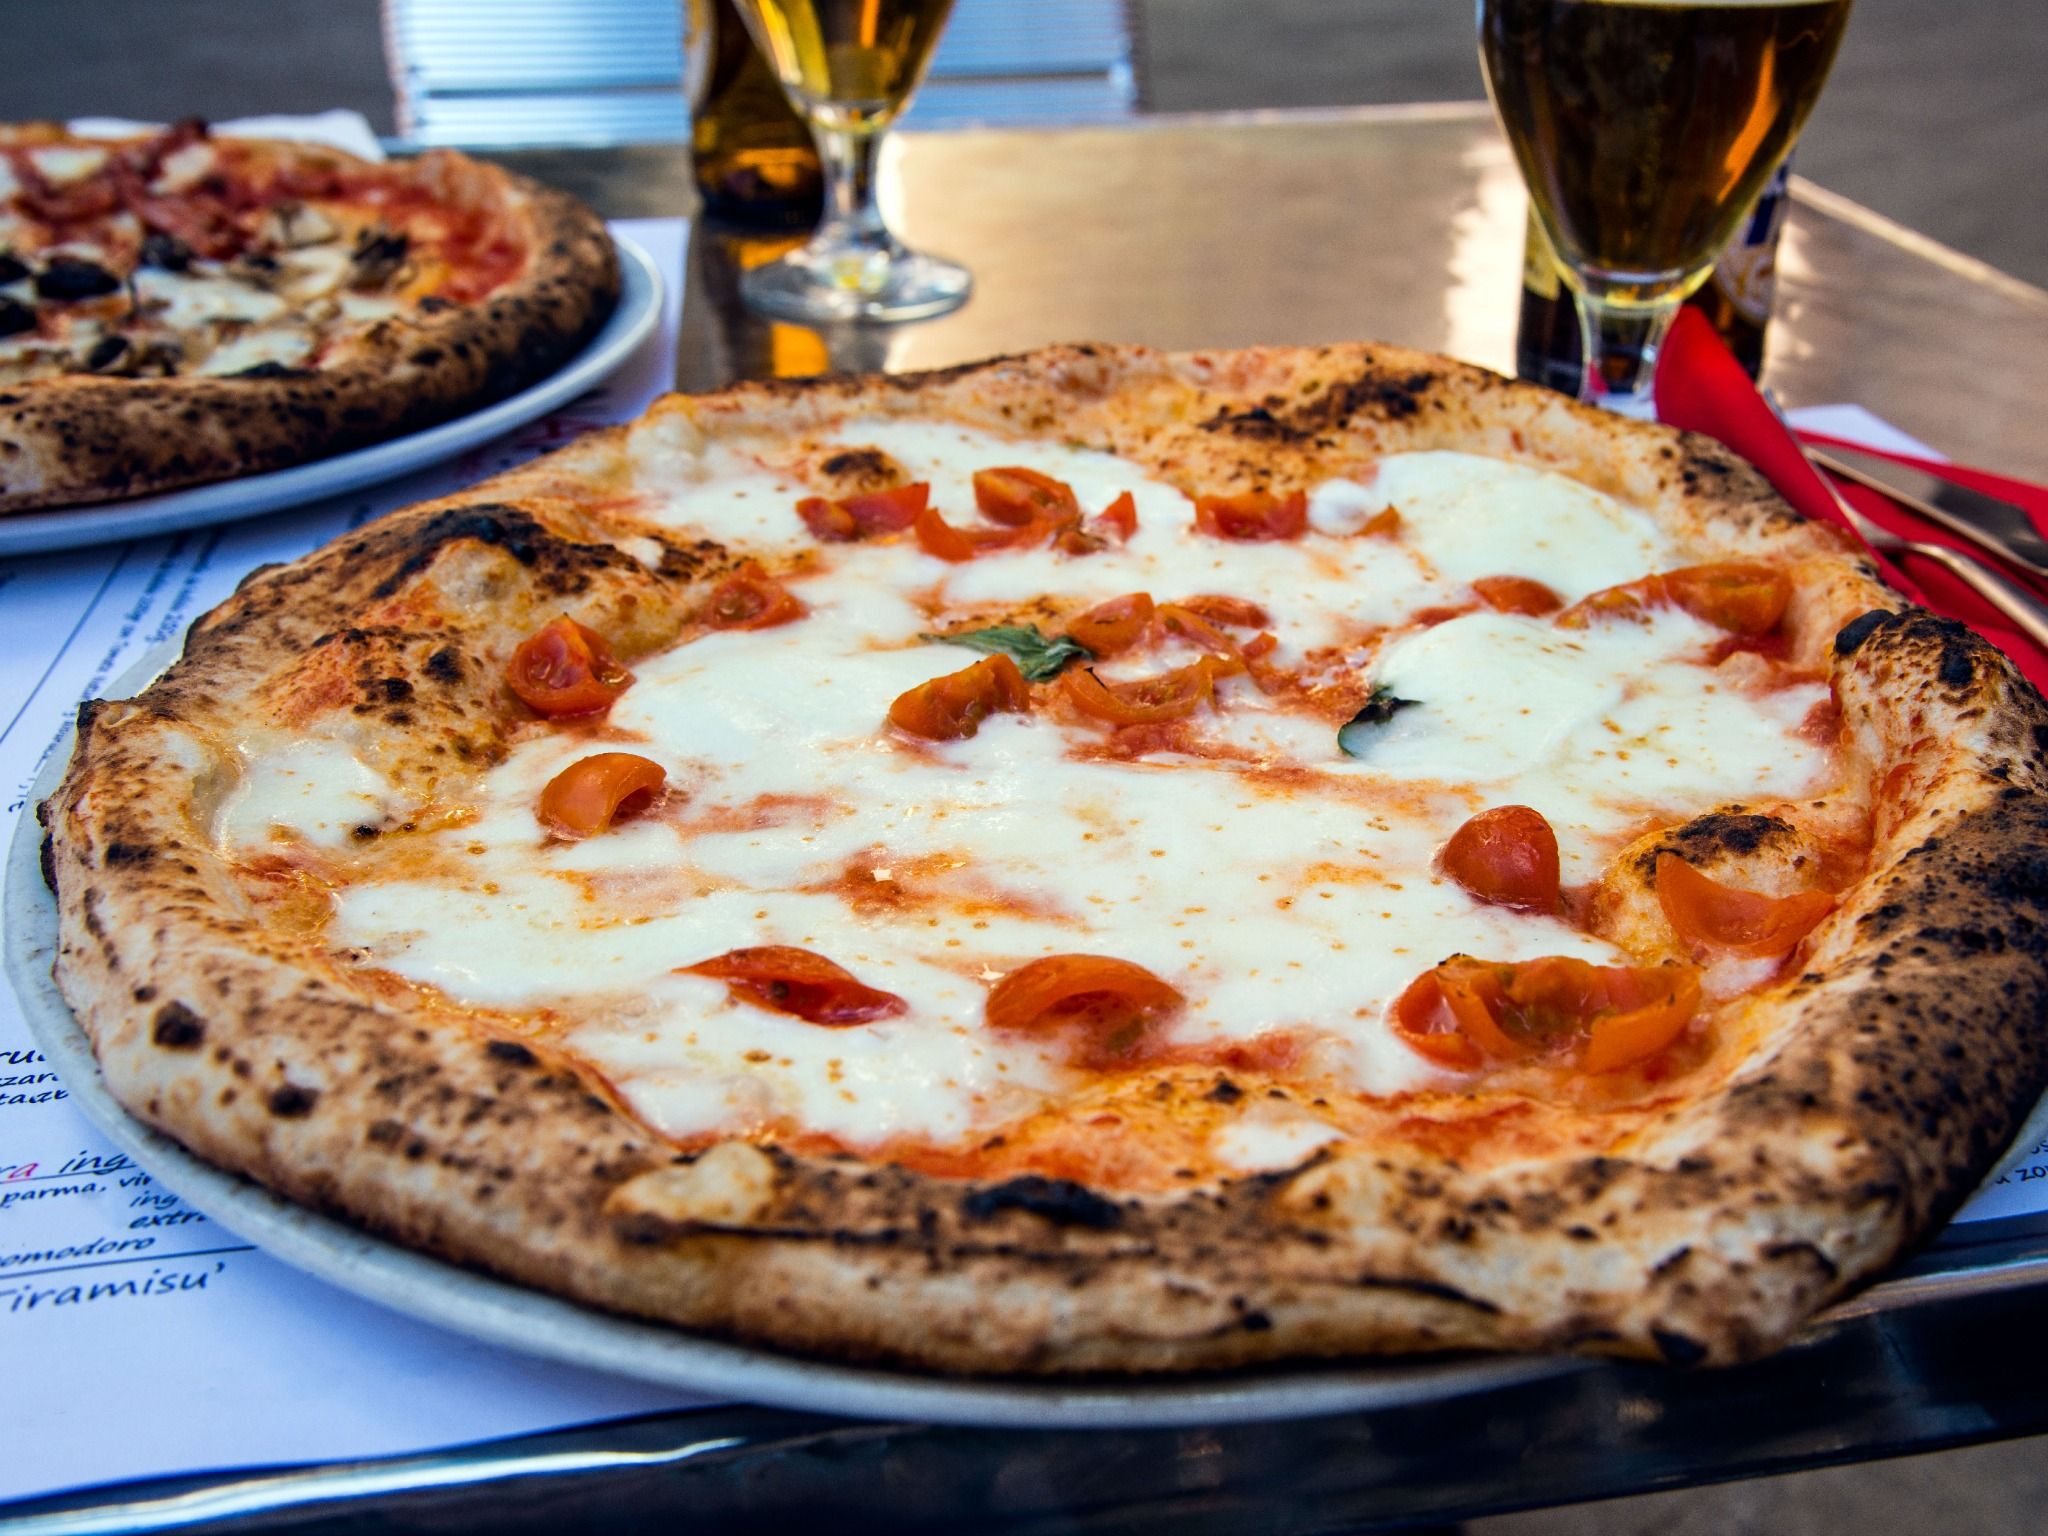 Pizza Italia - Món ăn bình dân nhưng cực kỳ phổ biến trên thế giới